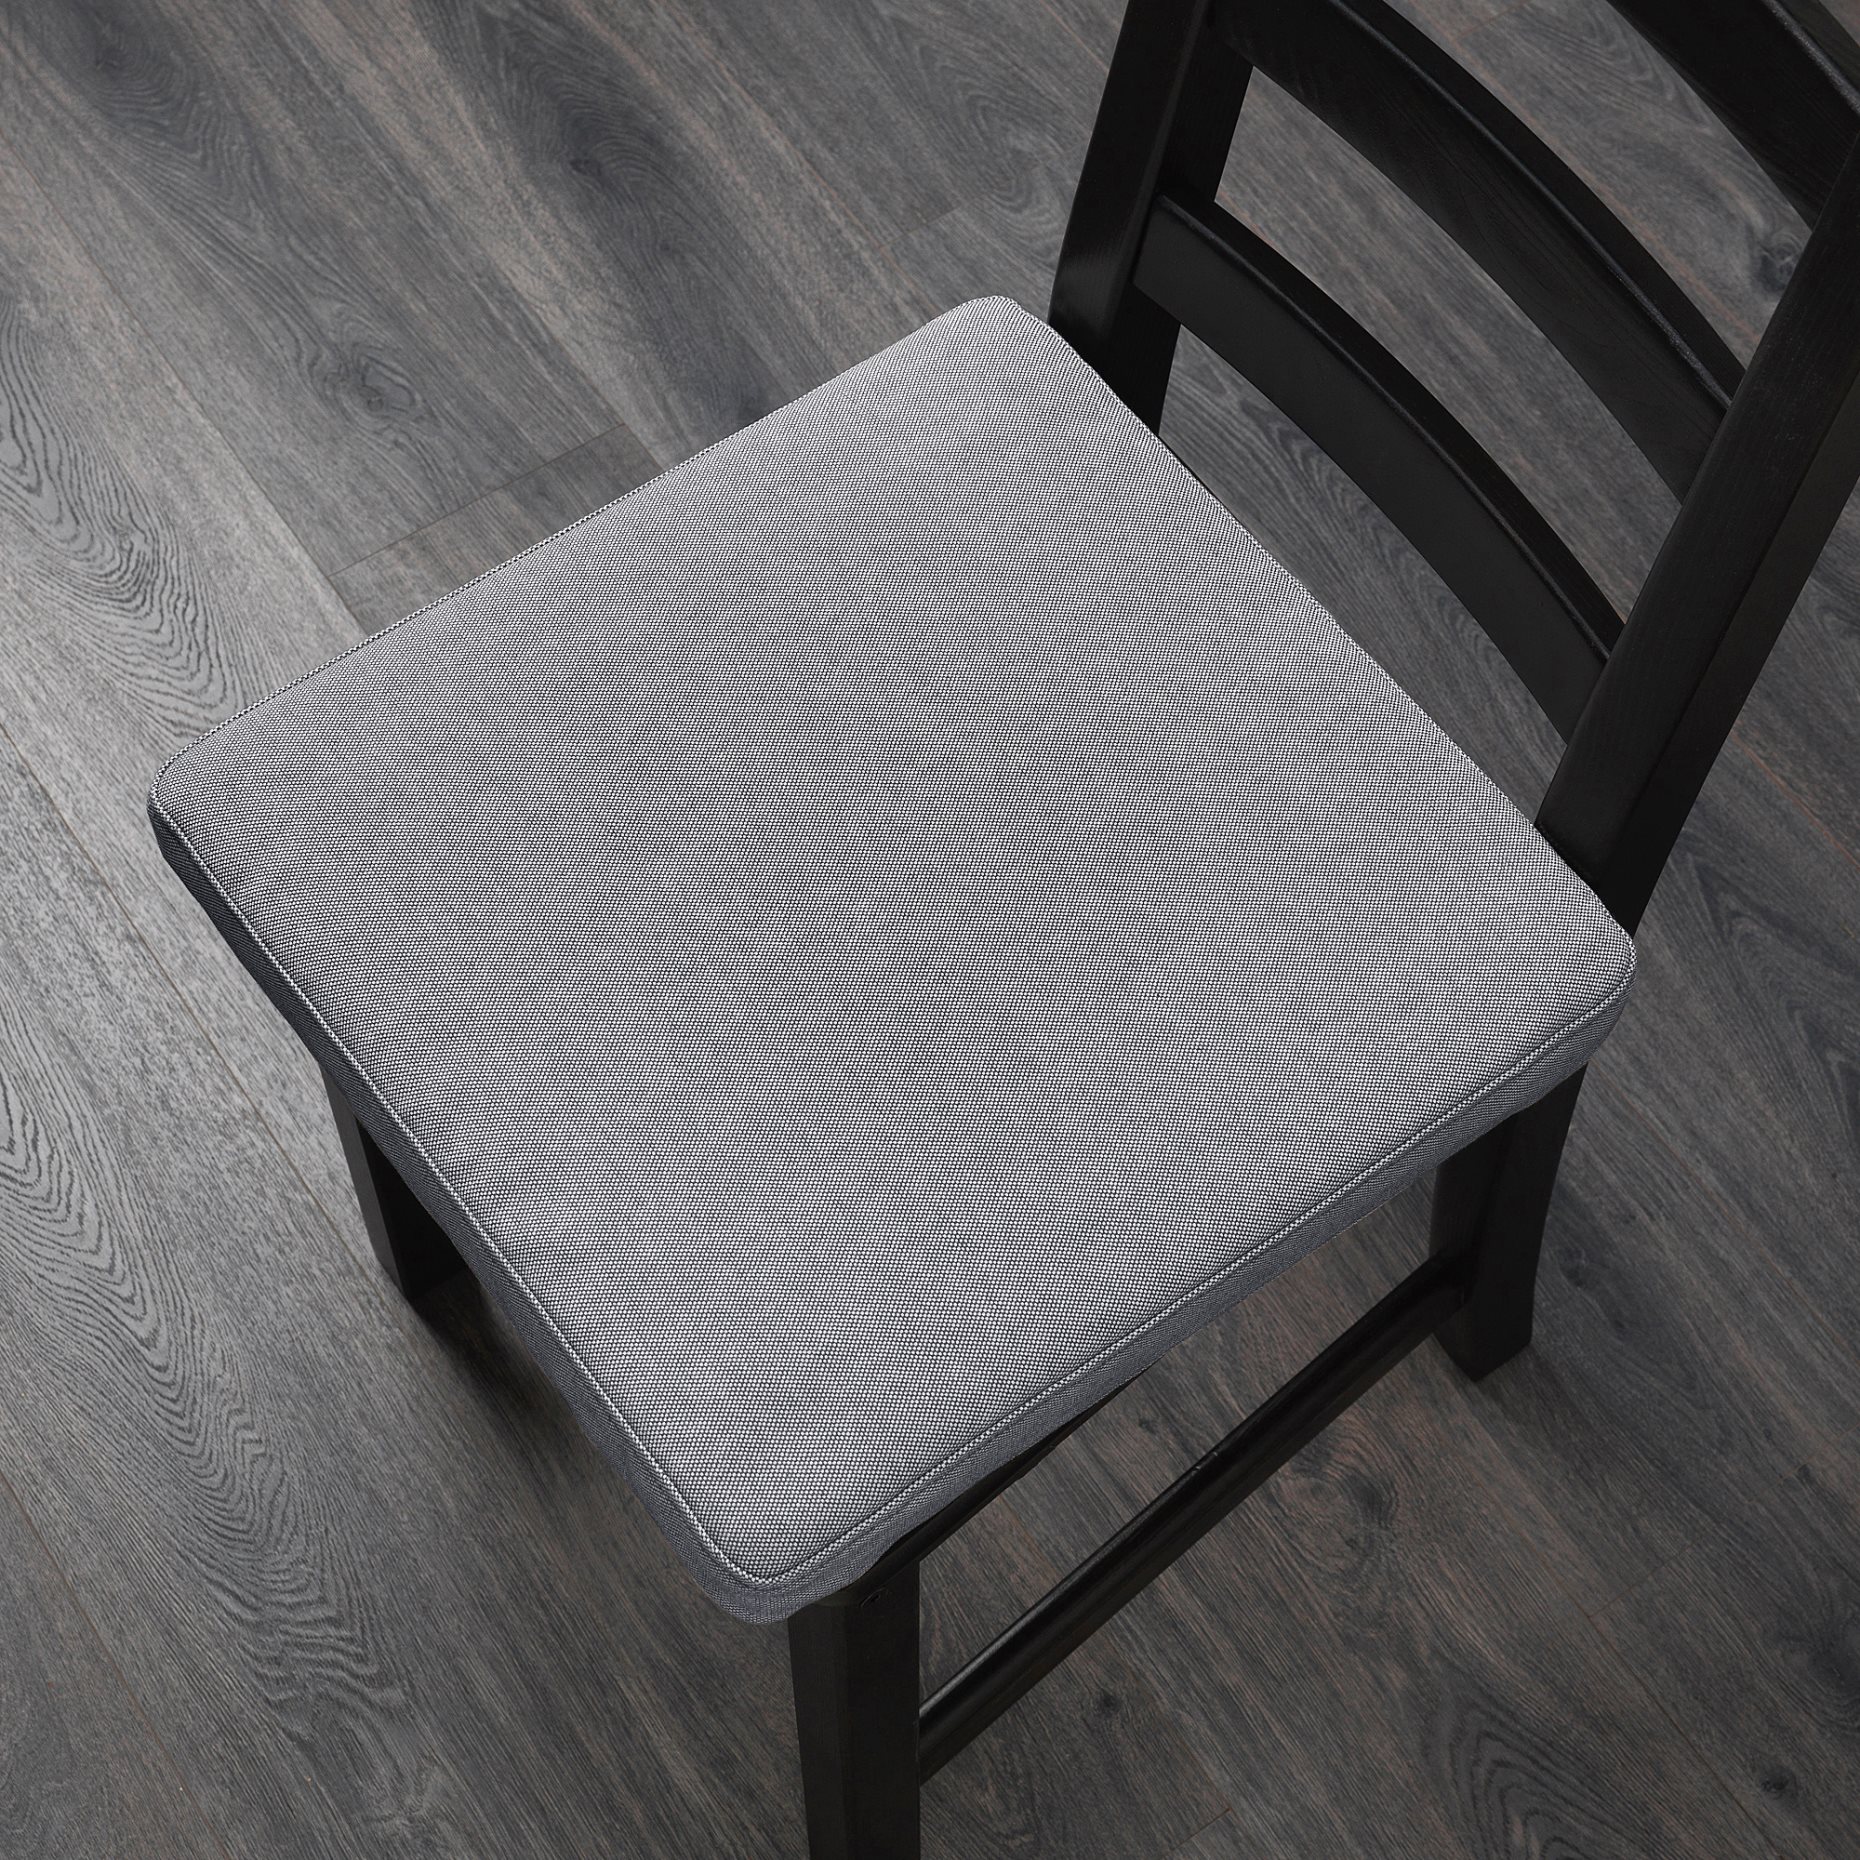 OMTÄNKSAM, chair cushion, 403.845.48